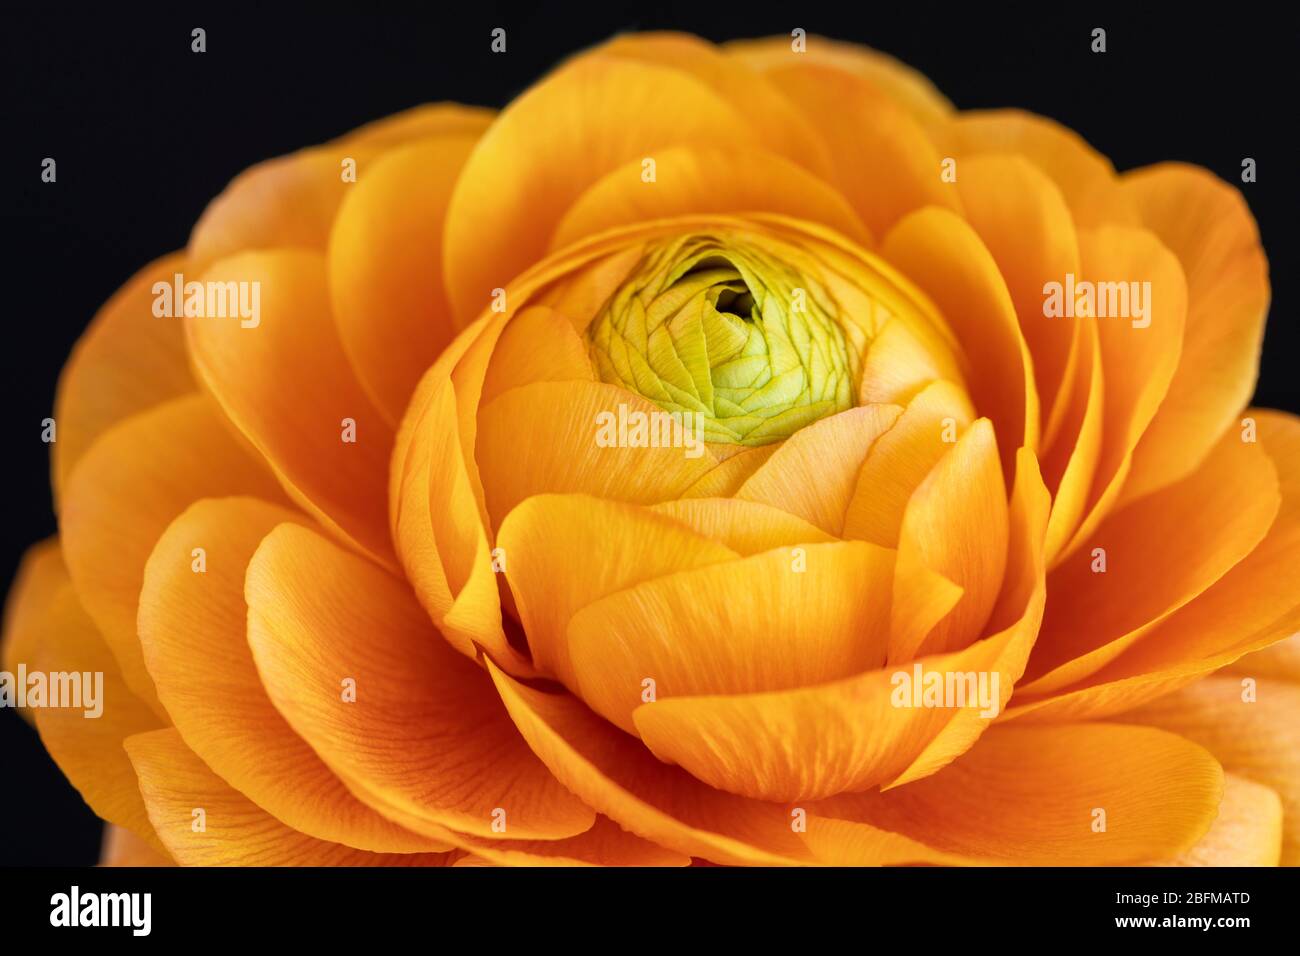 Close up of a golden orange Ranunculus bloom against a black background, UK. Studio shot Stock Photo